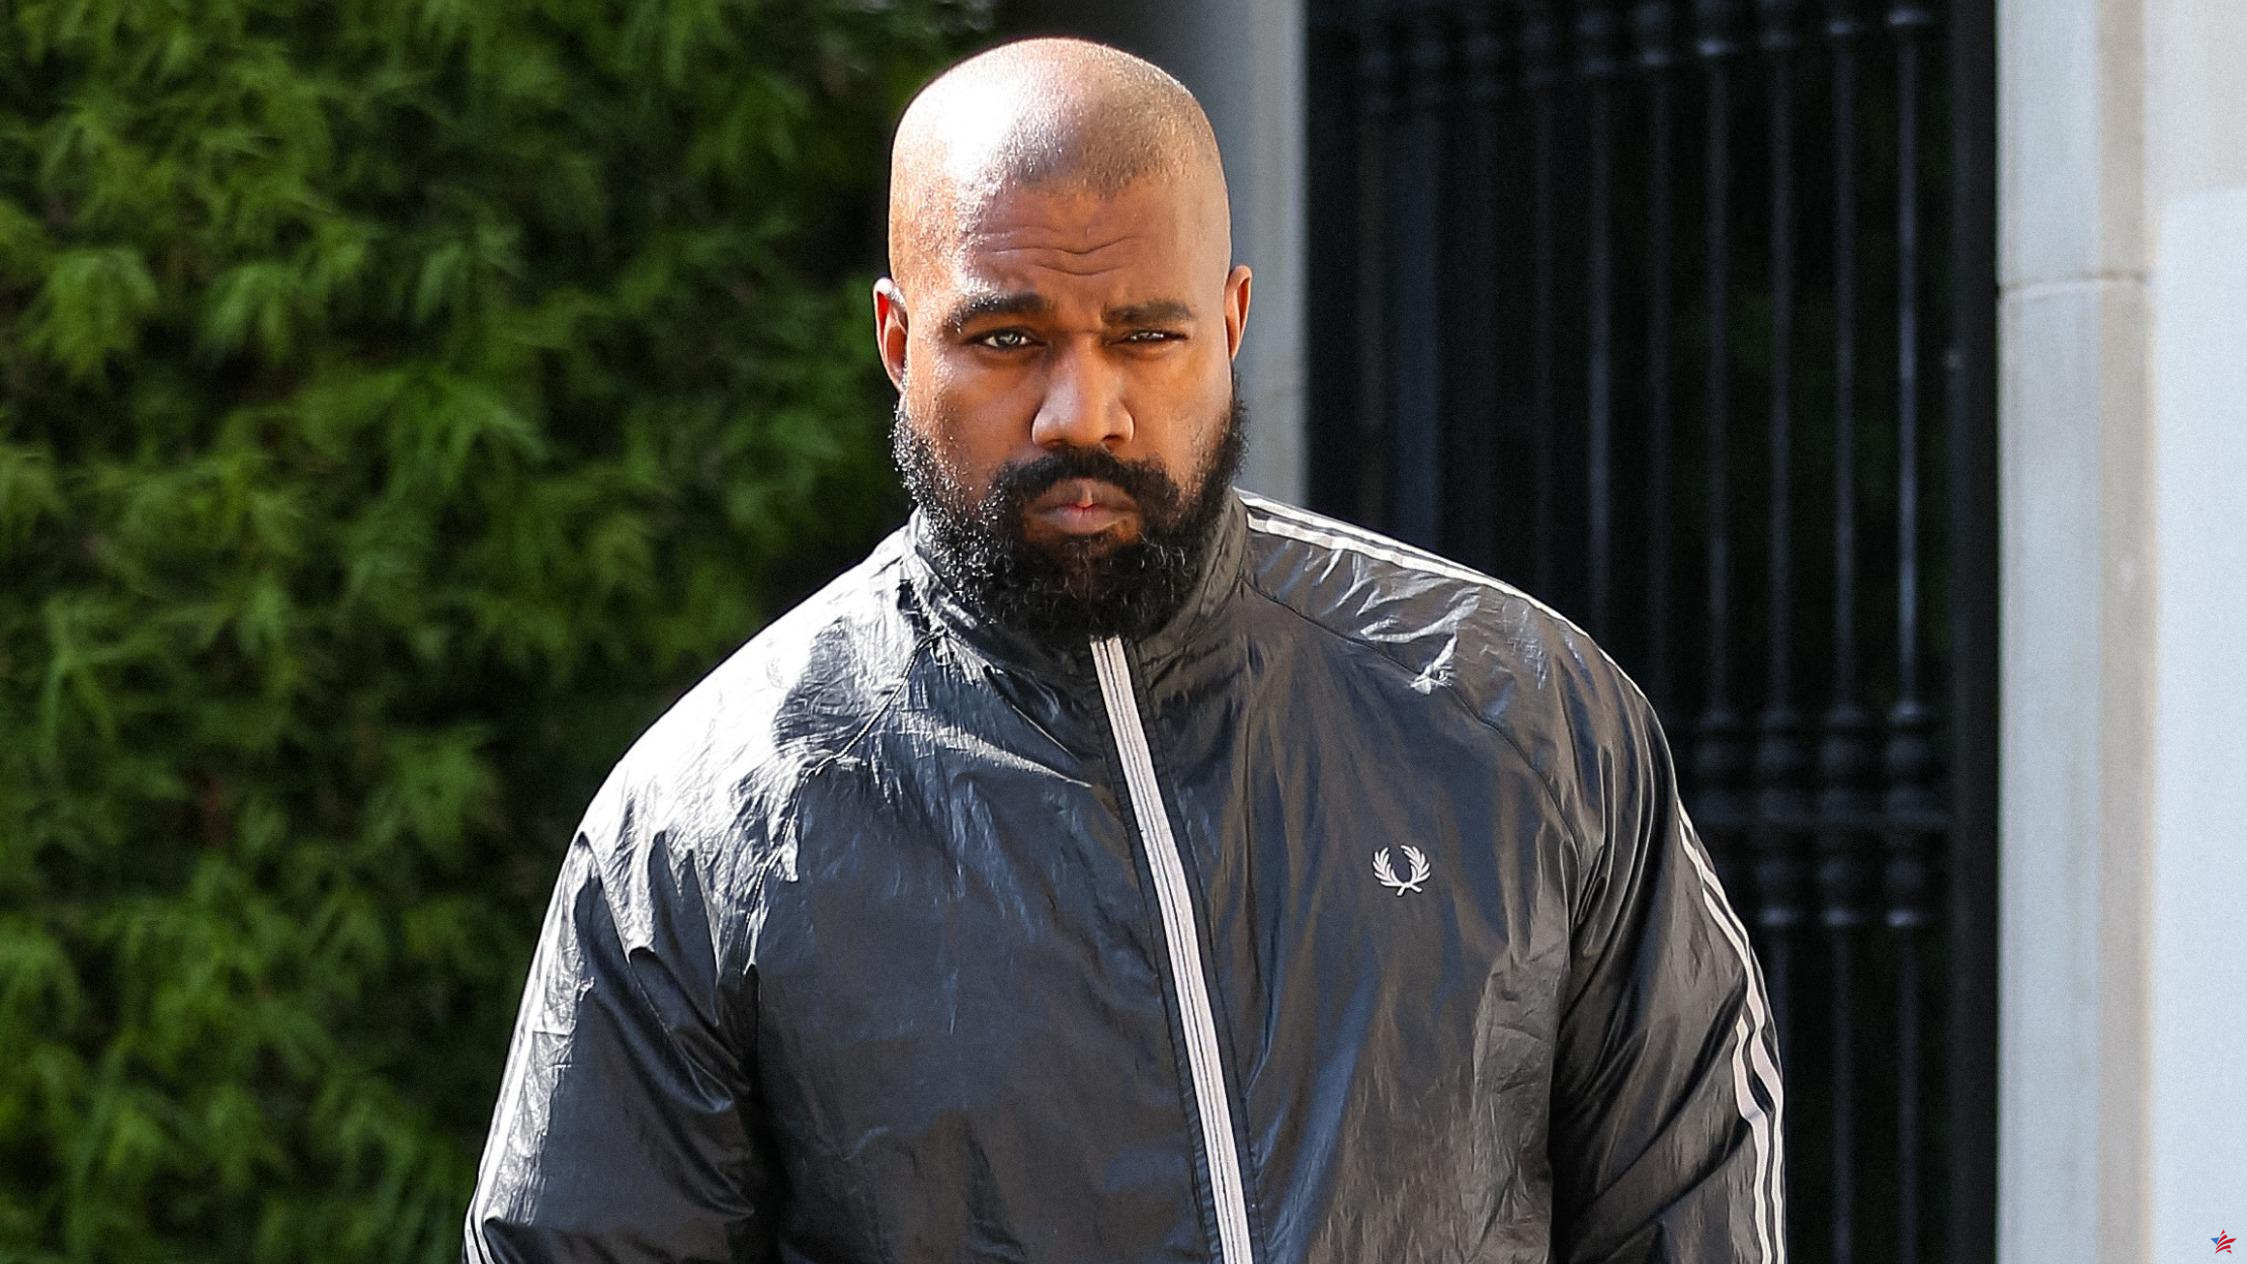 Presentan denuncia contra Kanye West, acusado de golpear a un individuo que acababa de agredir a su esposa